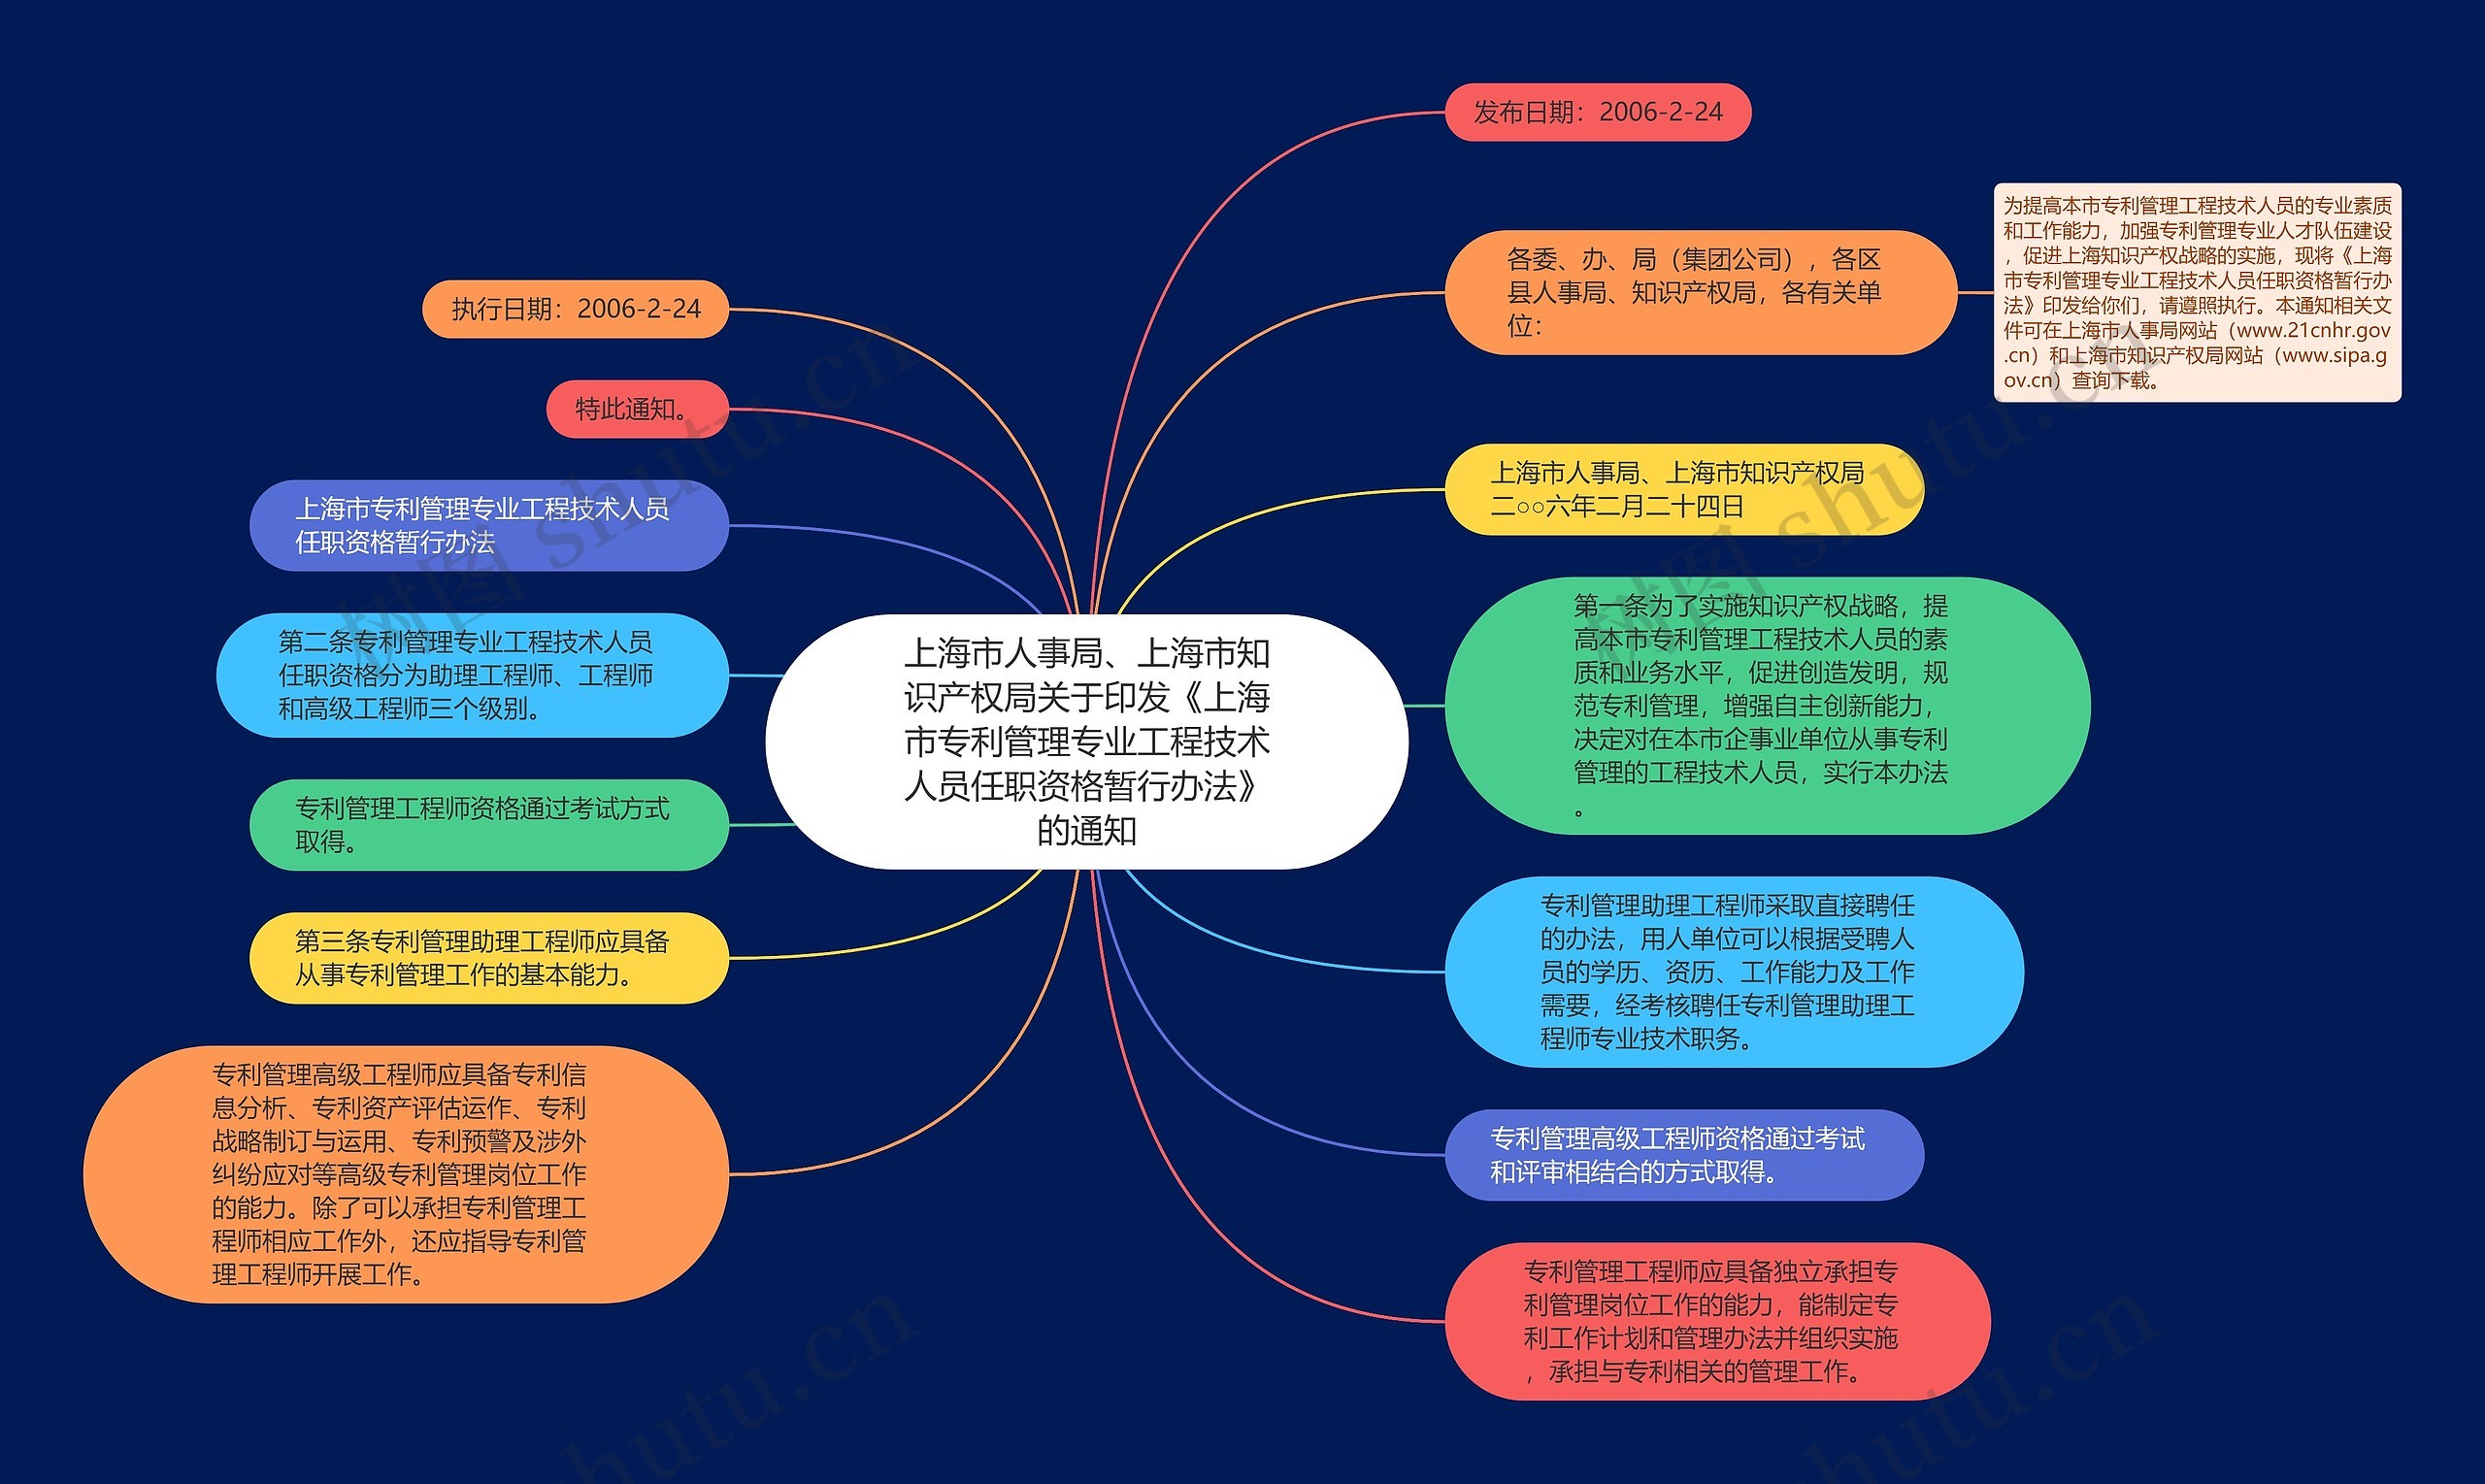 上海市人事局、上海市知识产权局关于印发《上海市专利管理专业工程技术人员任职资格暂行办法》的通知思维导图